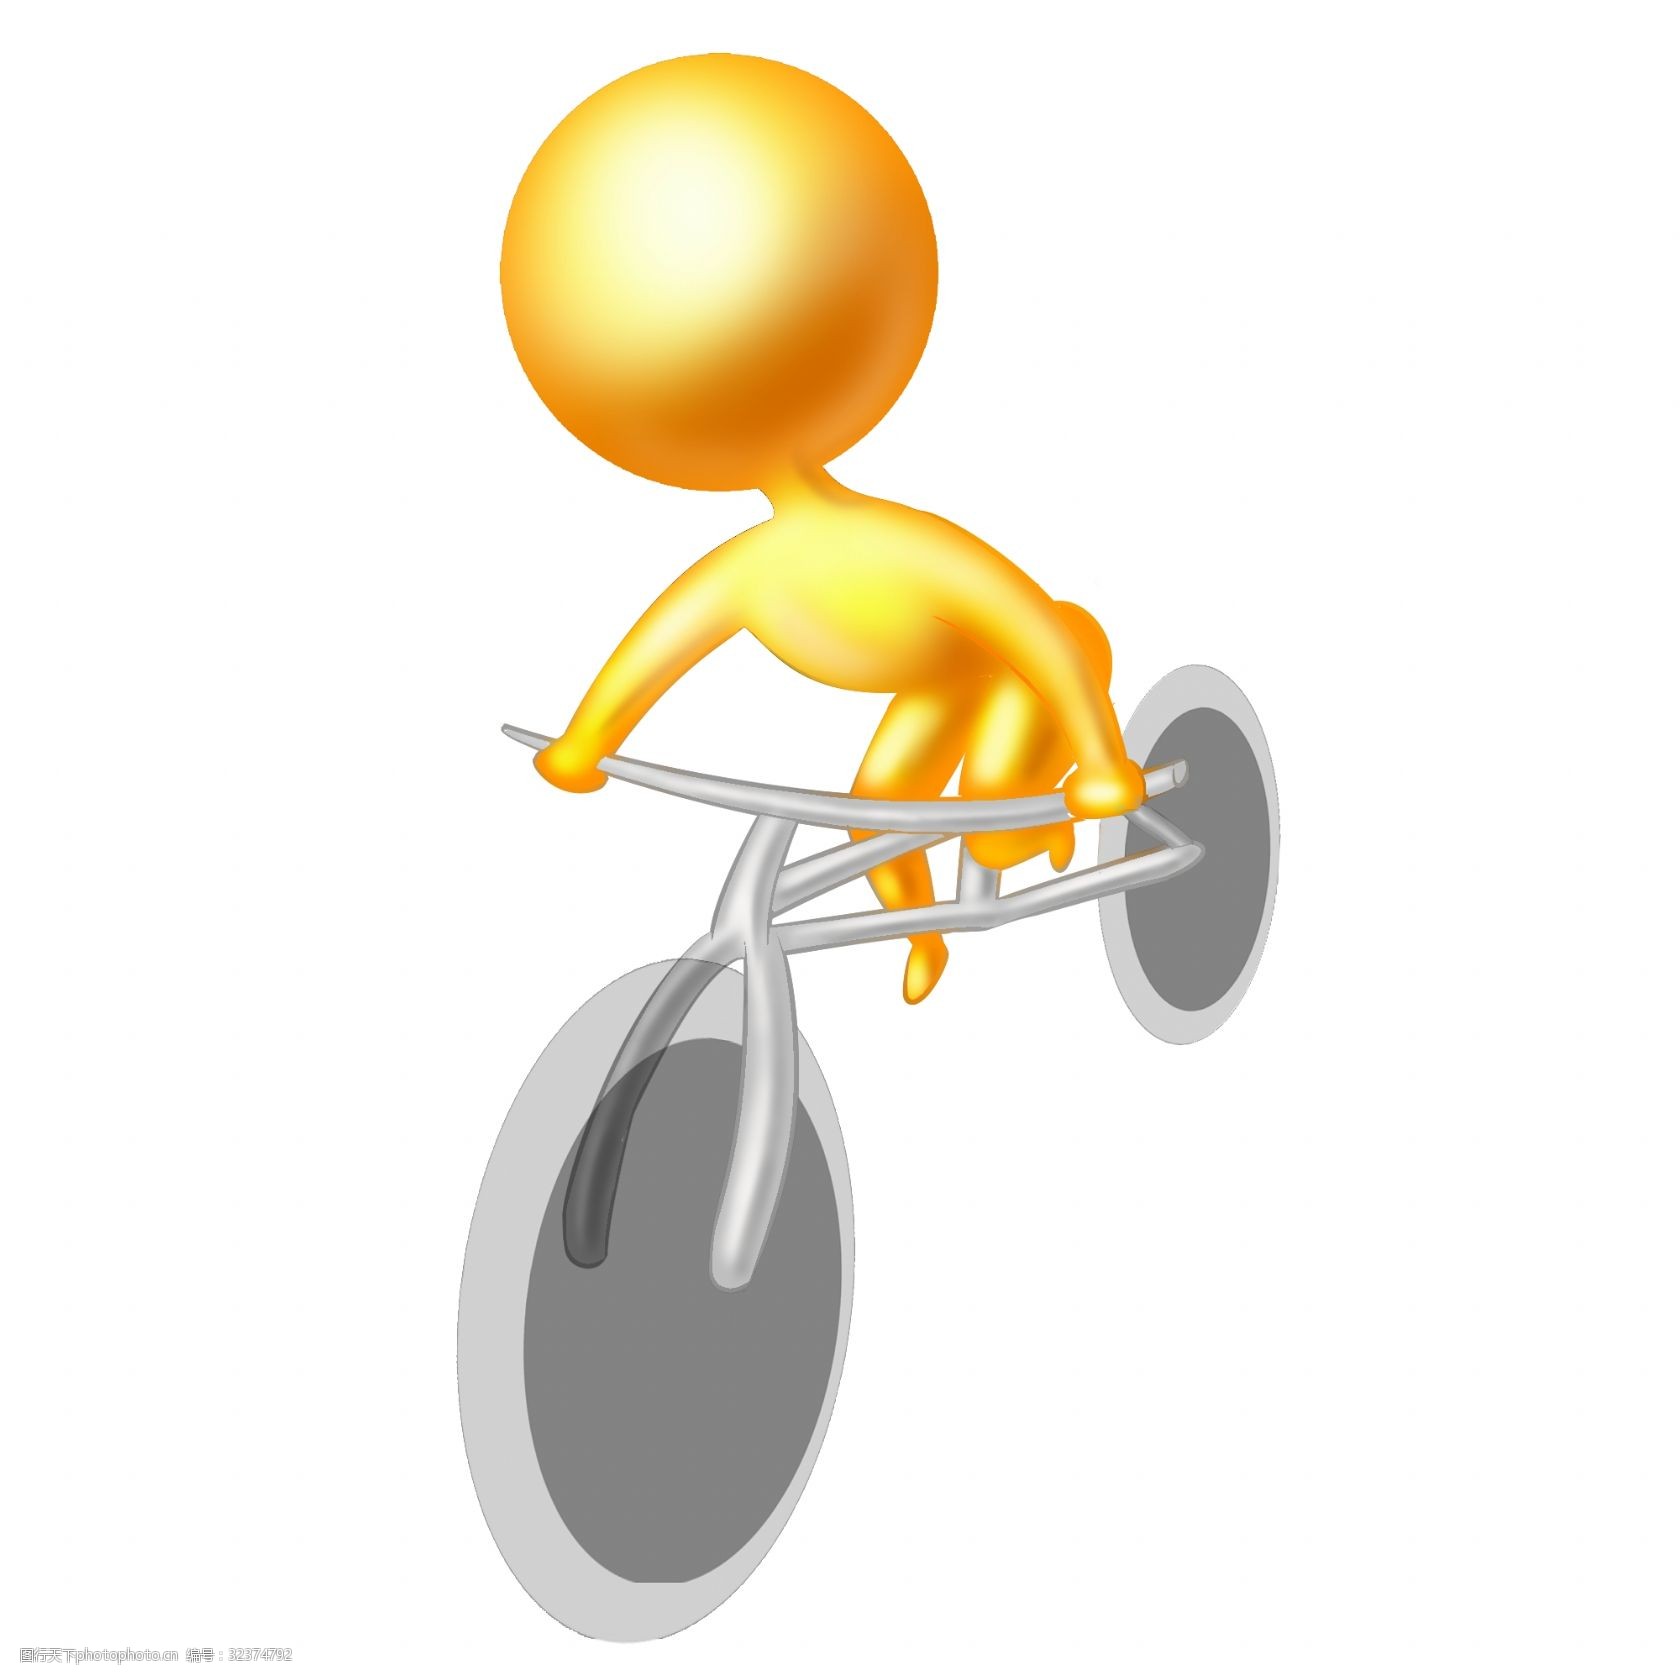 关键词:骑车的火柴人插画 骑车的火柴人 灰色的自行车 卡通火柴人